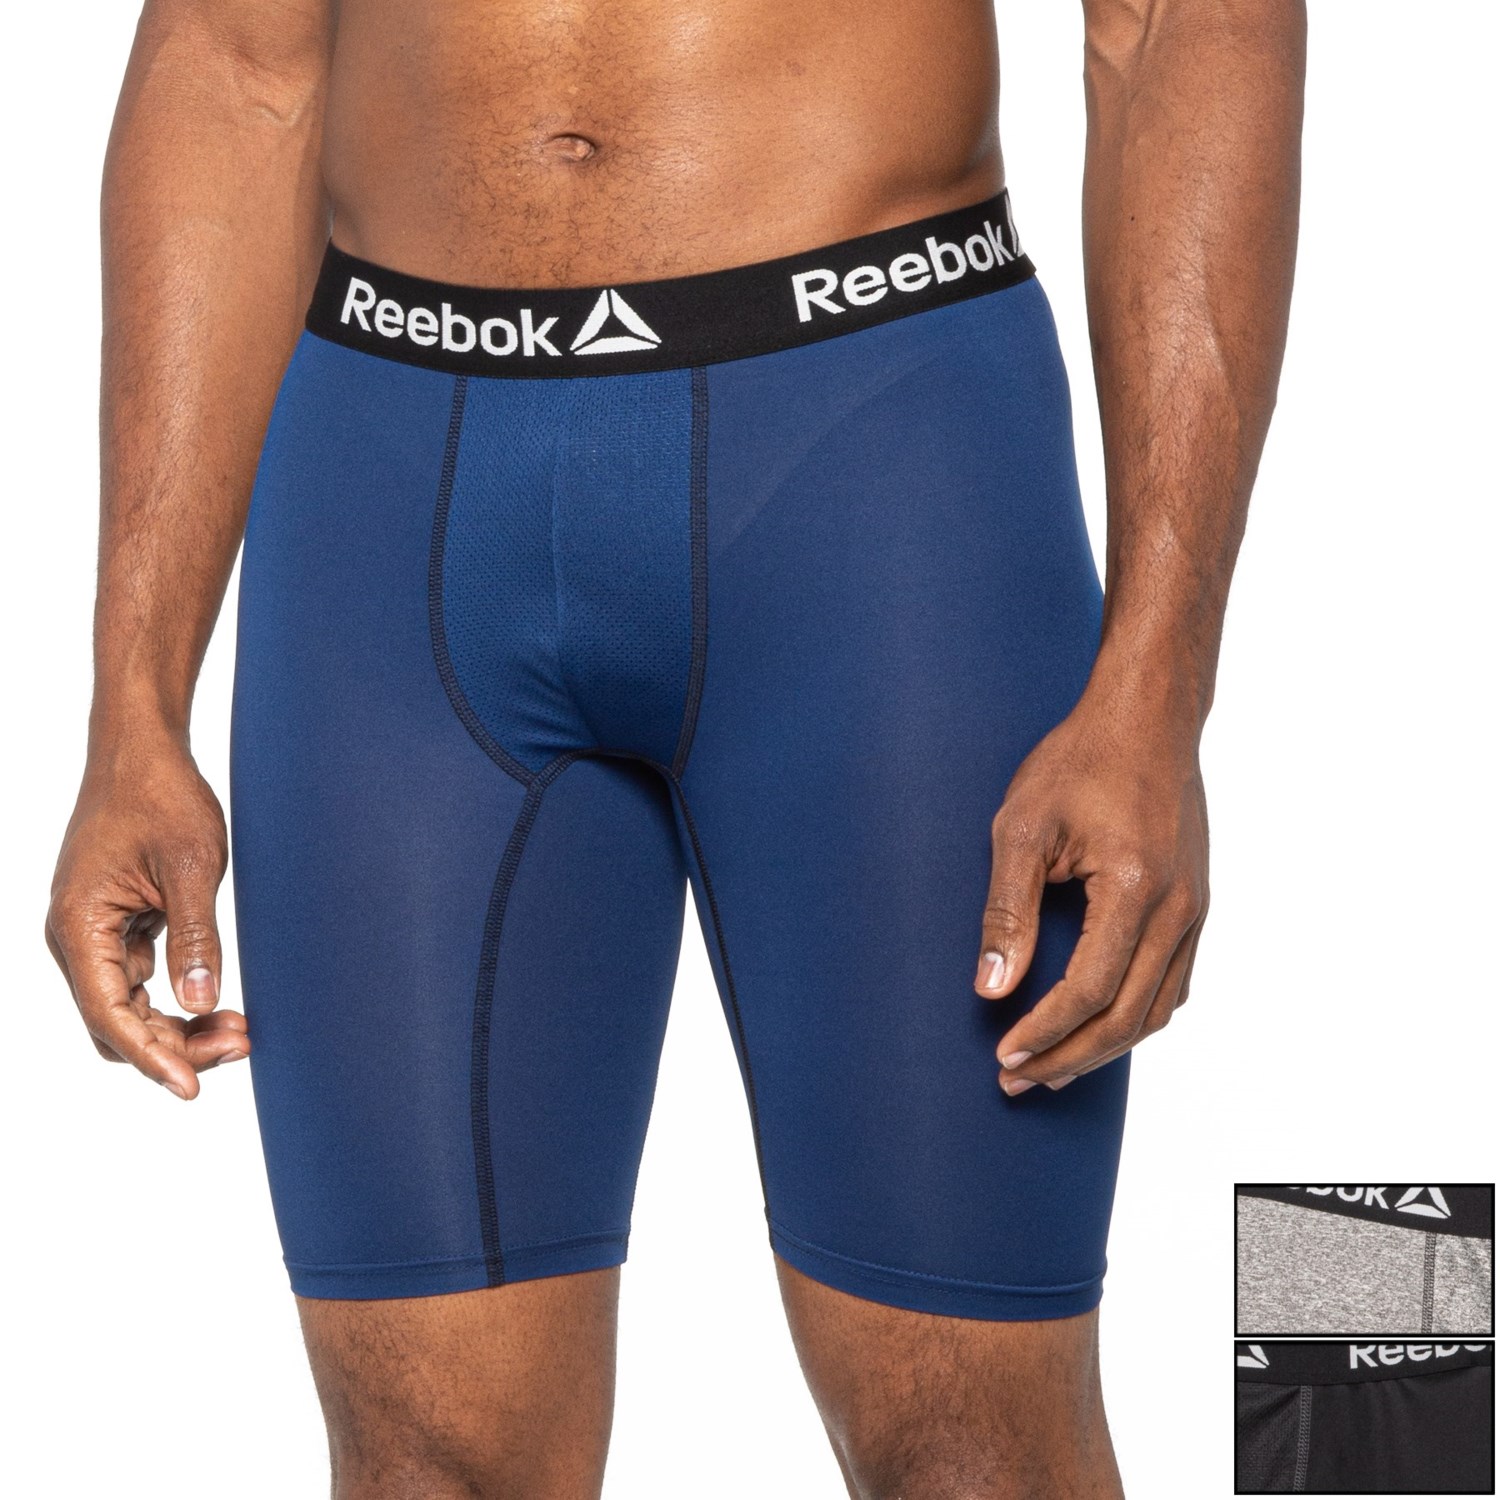 reebok male underwear